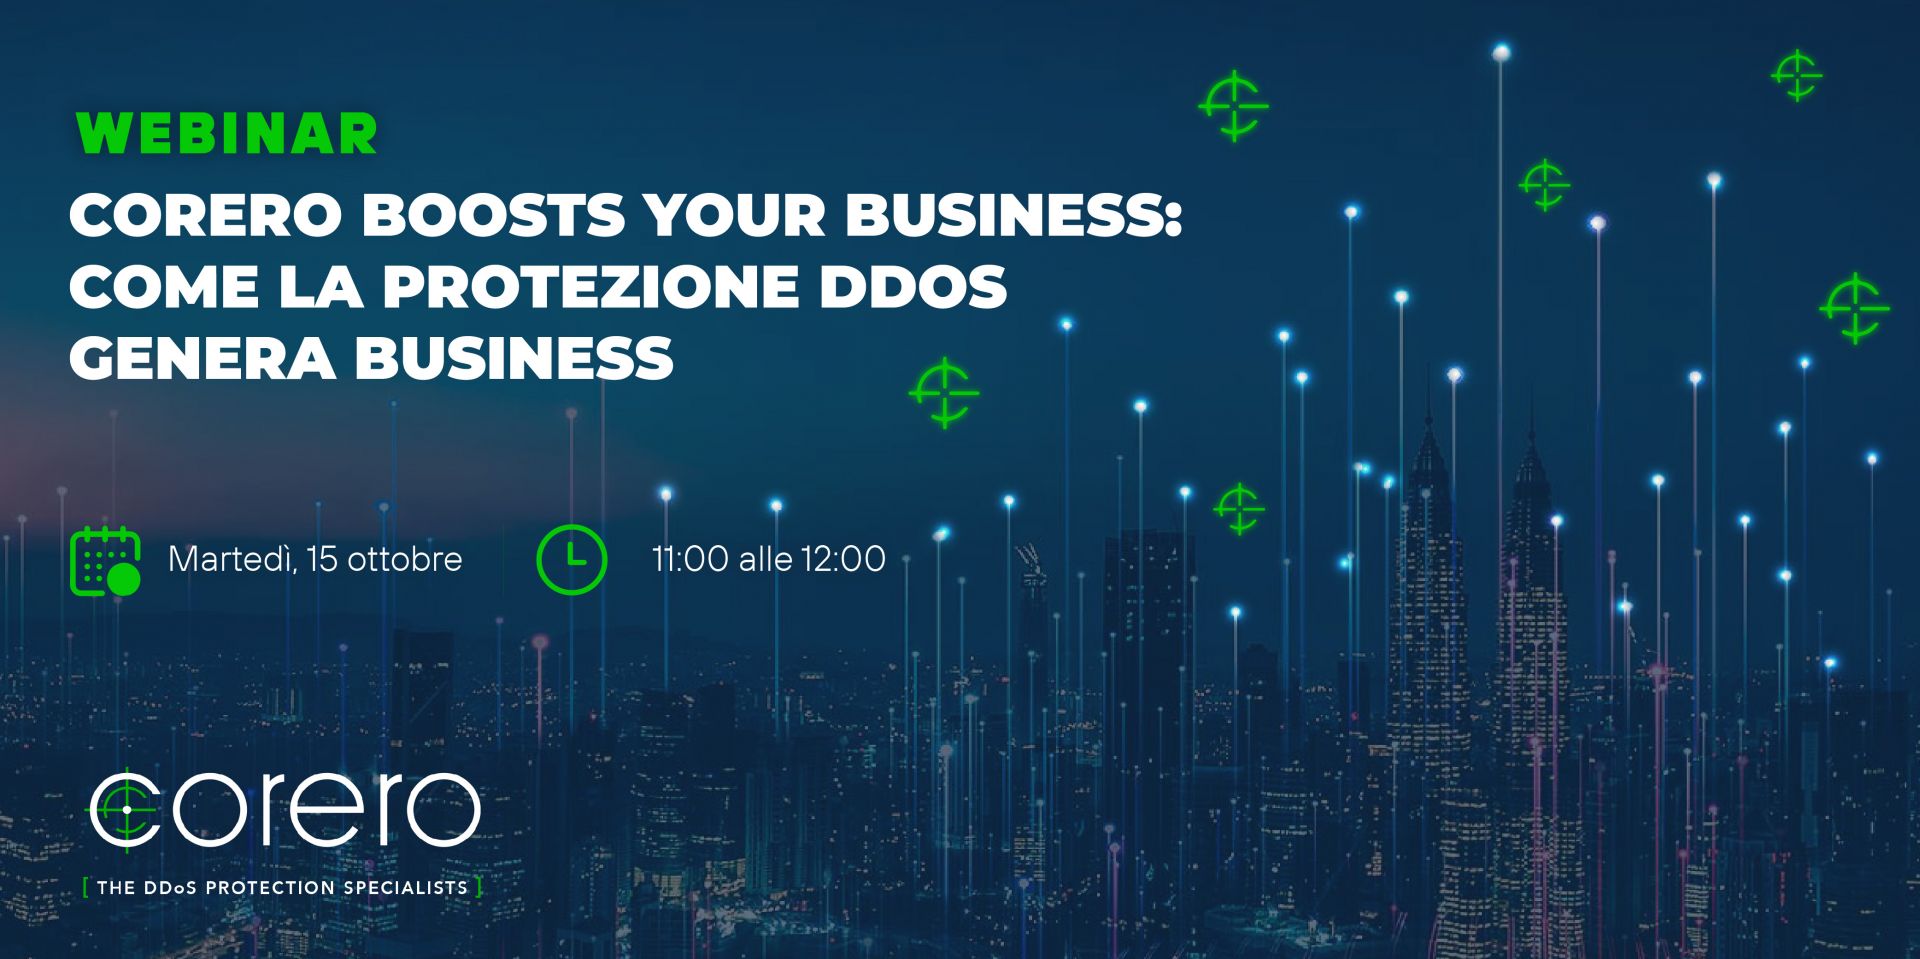 Corero boosts Your Business: come la protezione DDoS genera business